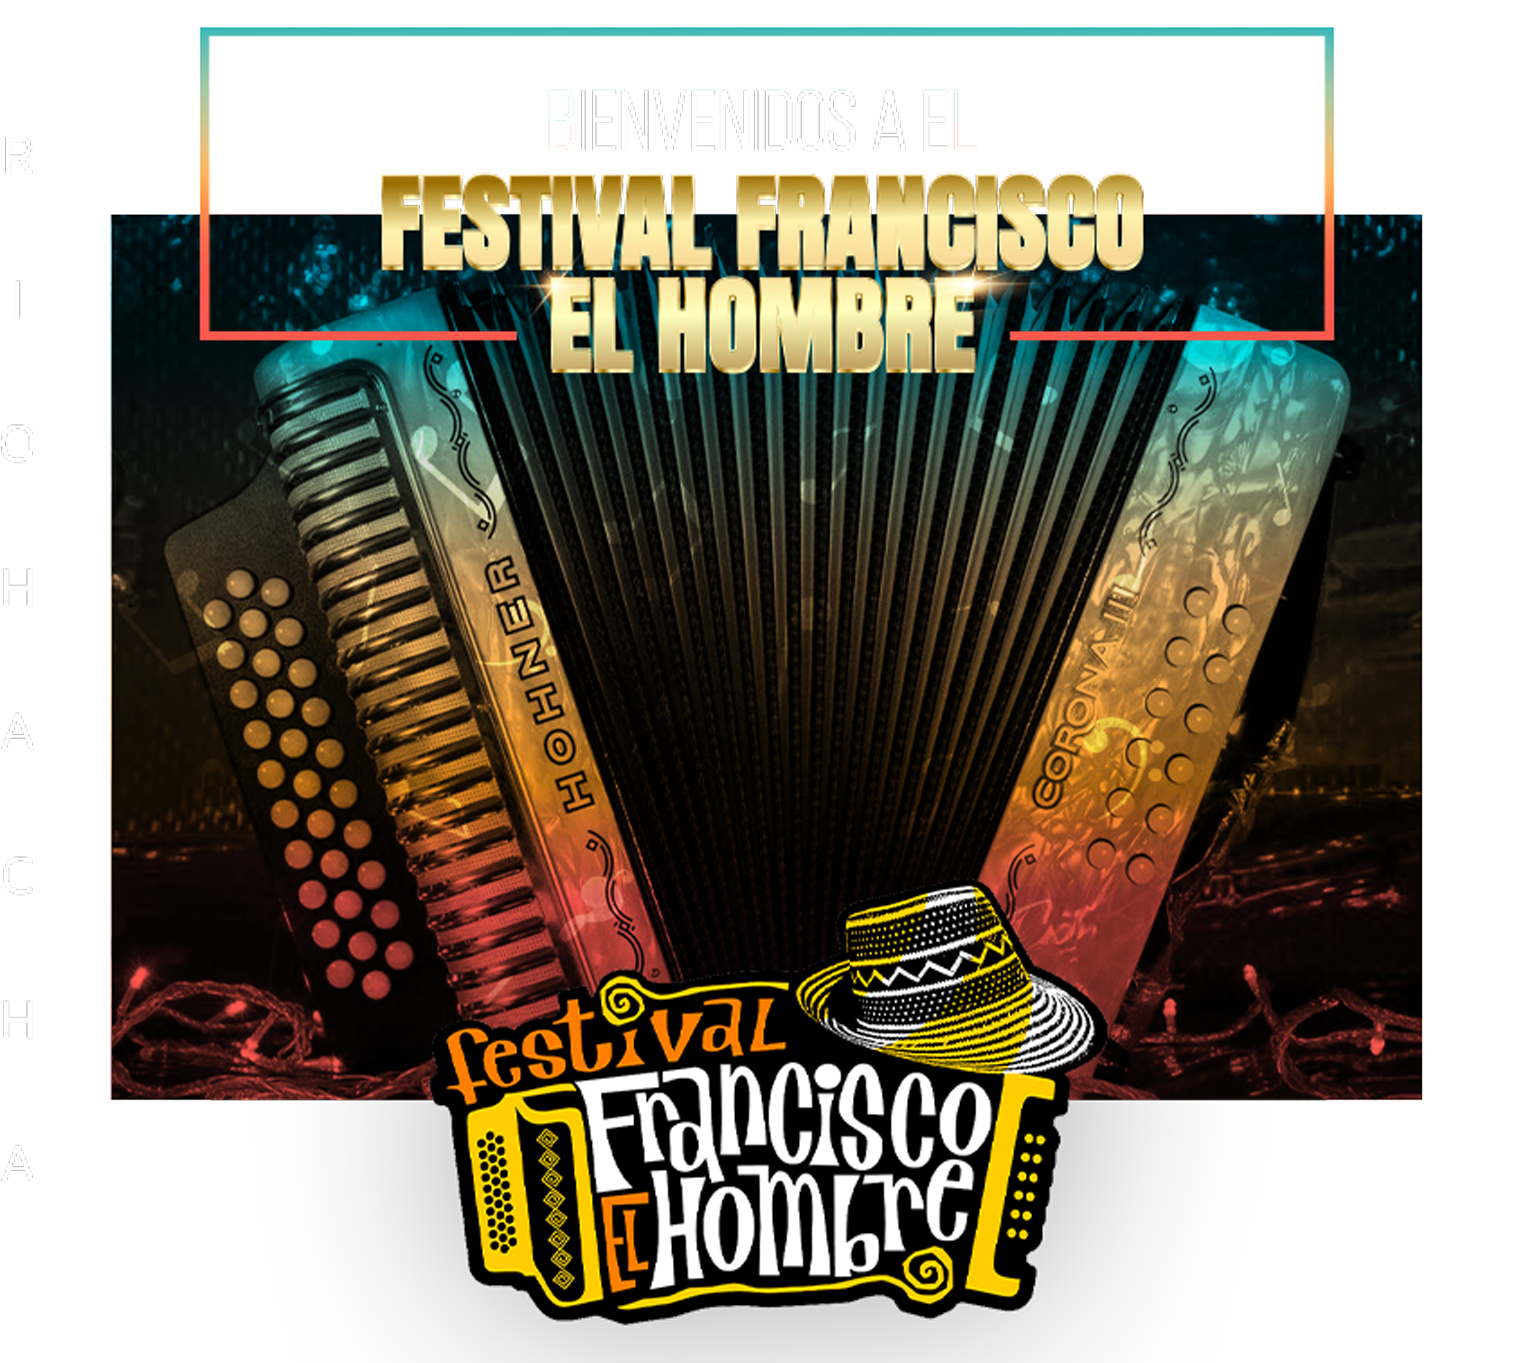 Festival Francisco el Hombre (FFH) 2023 anuncia concursantes oficiales - Revista EntoRnos